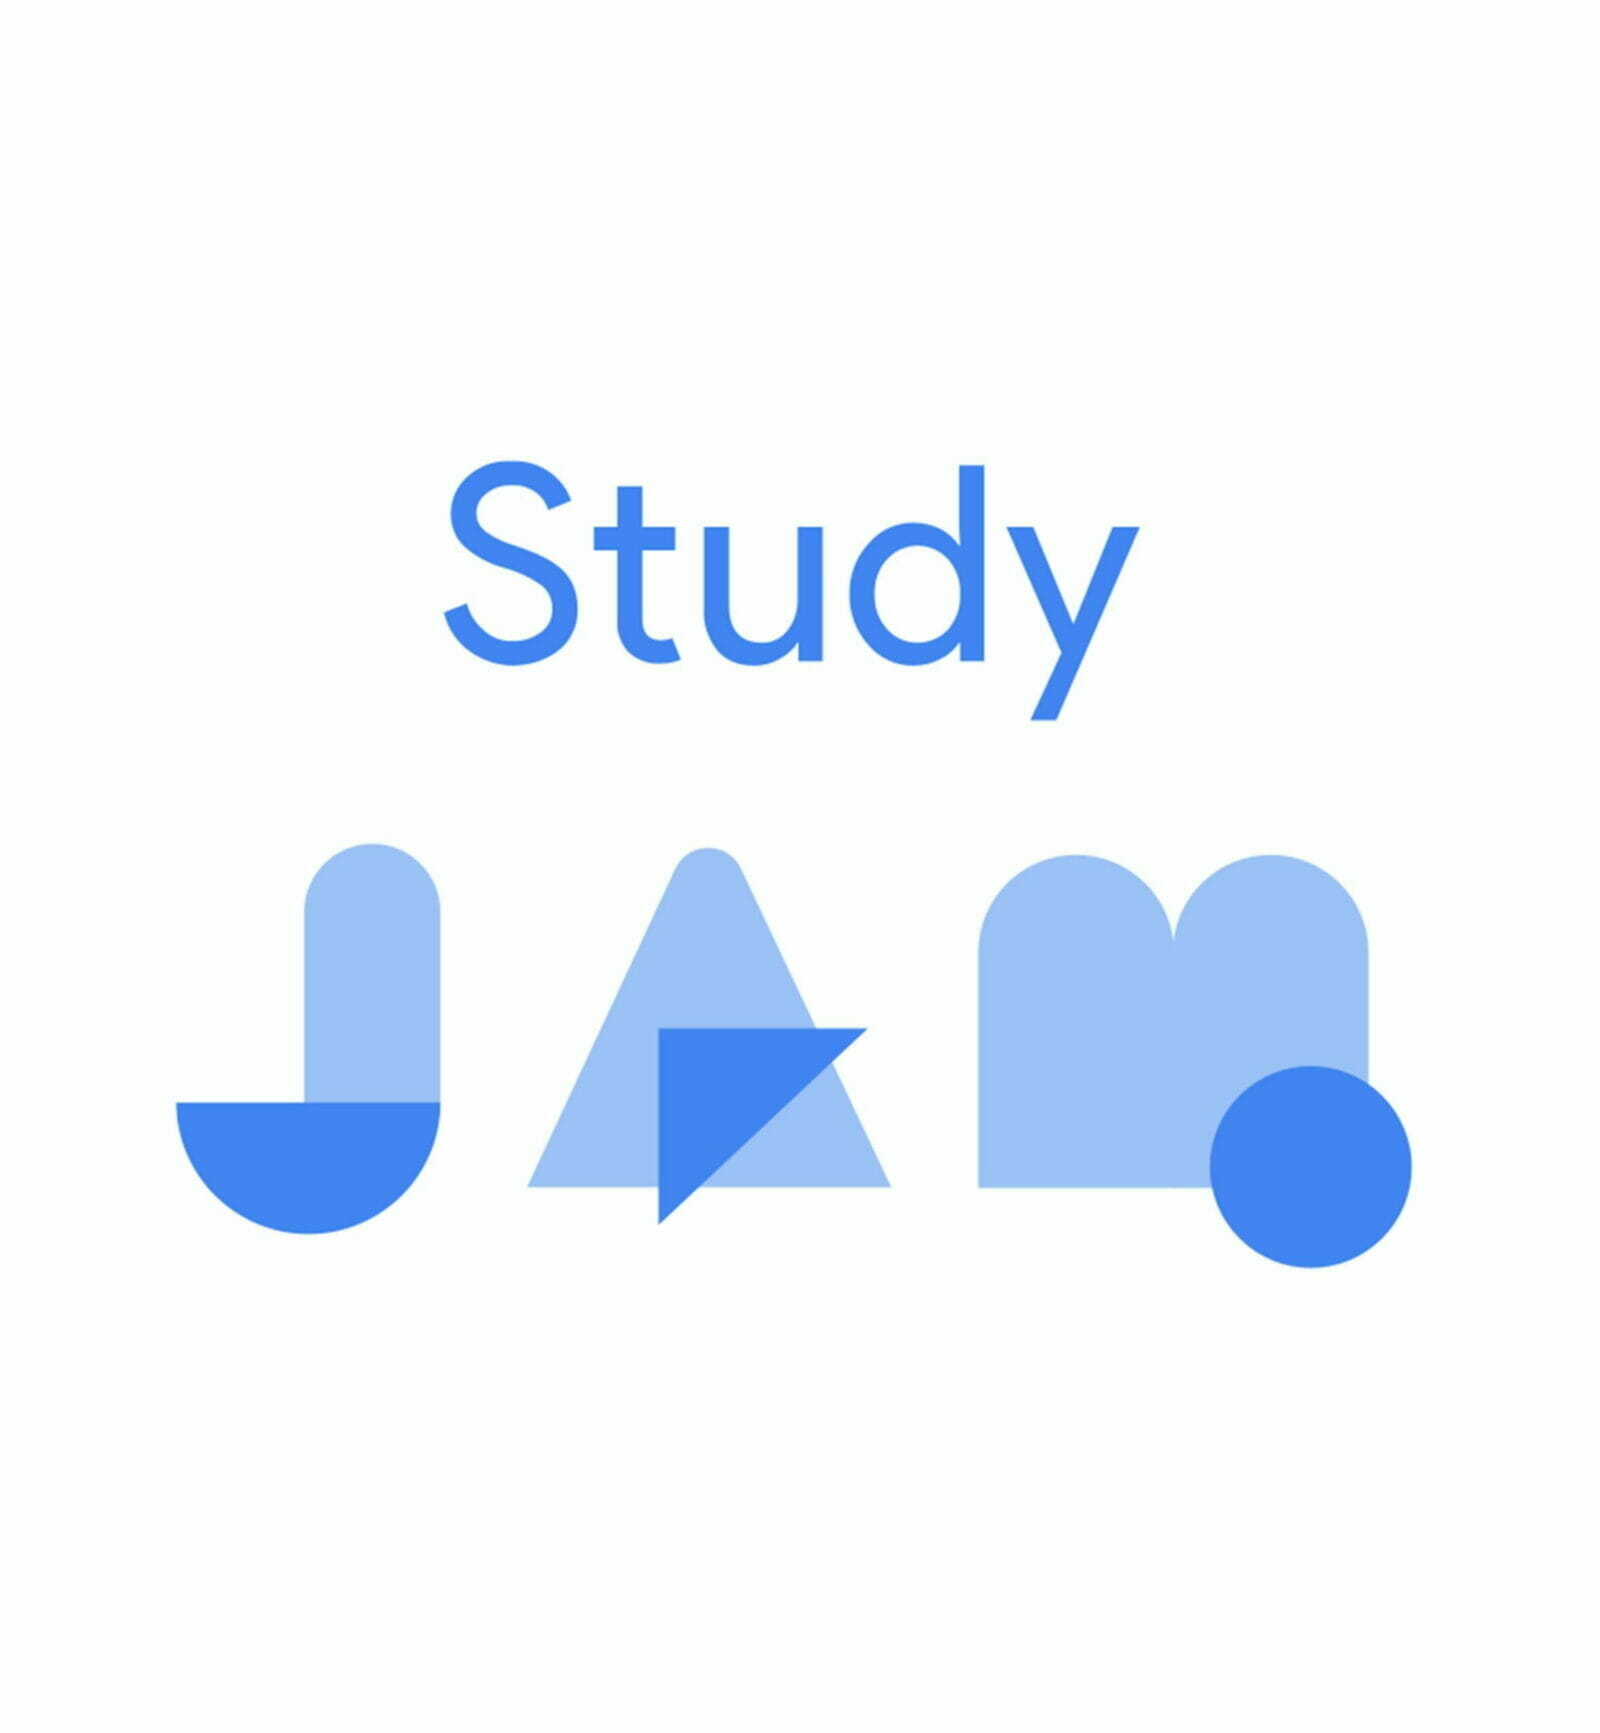 [GCP] Cloud Study Jam